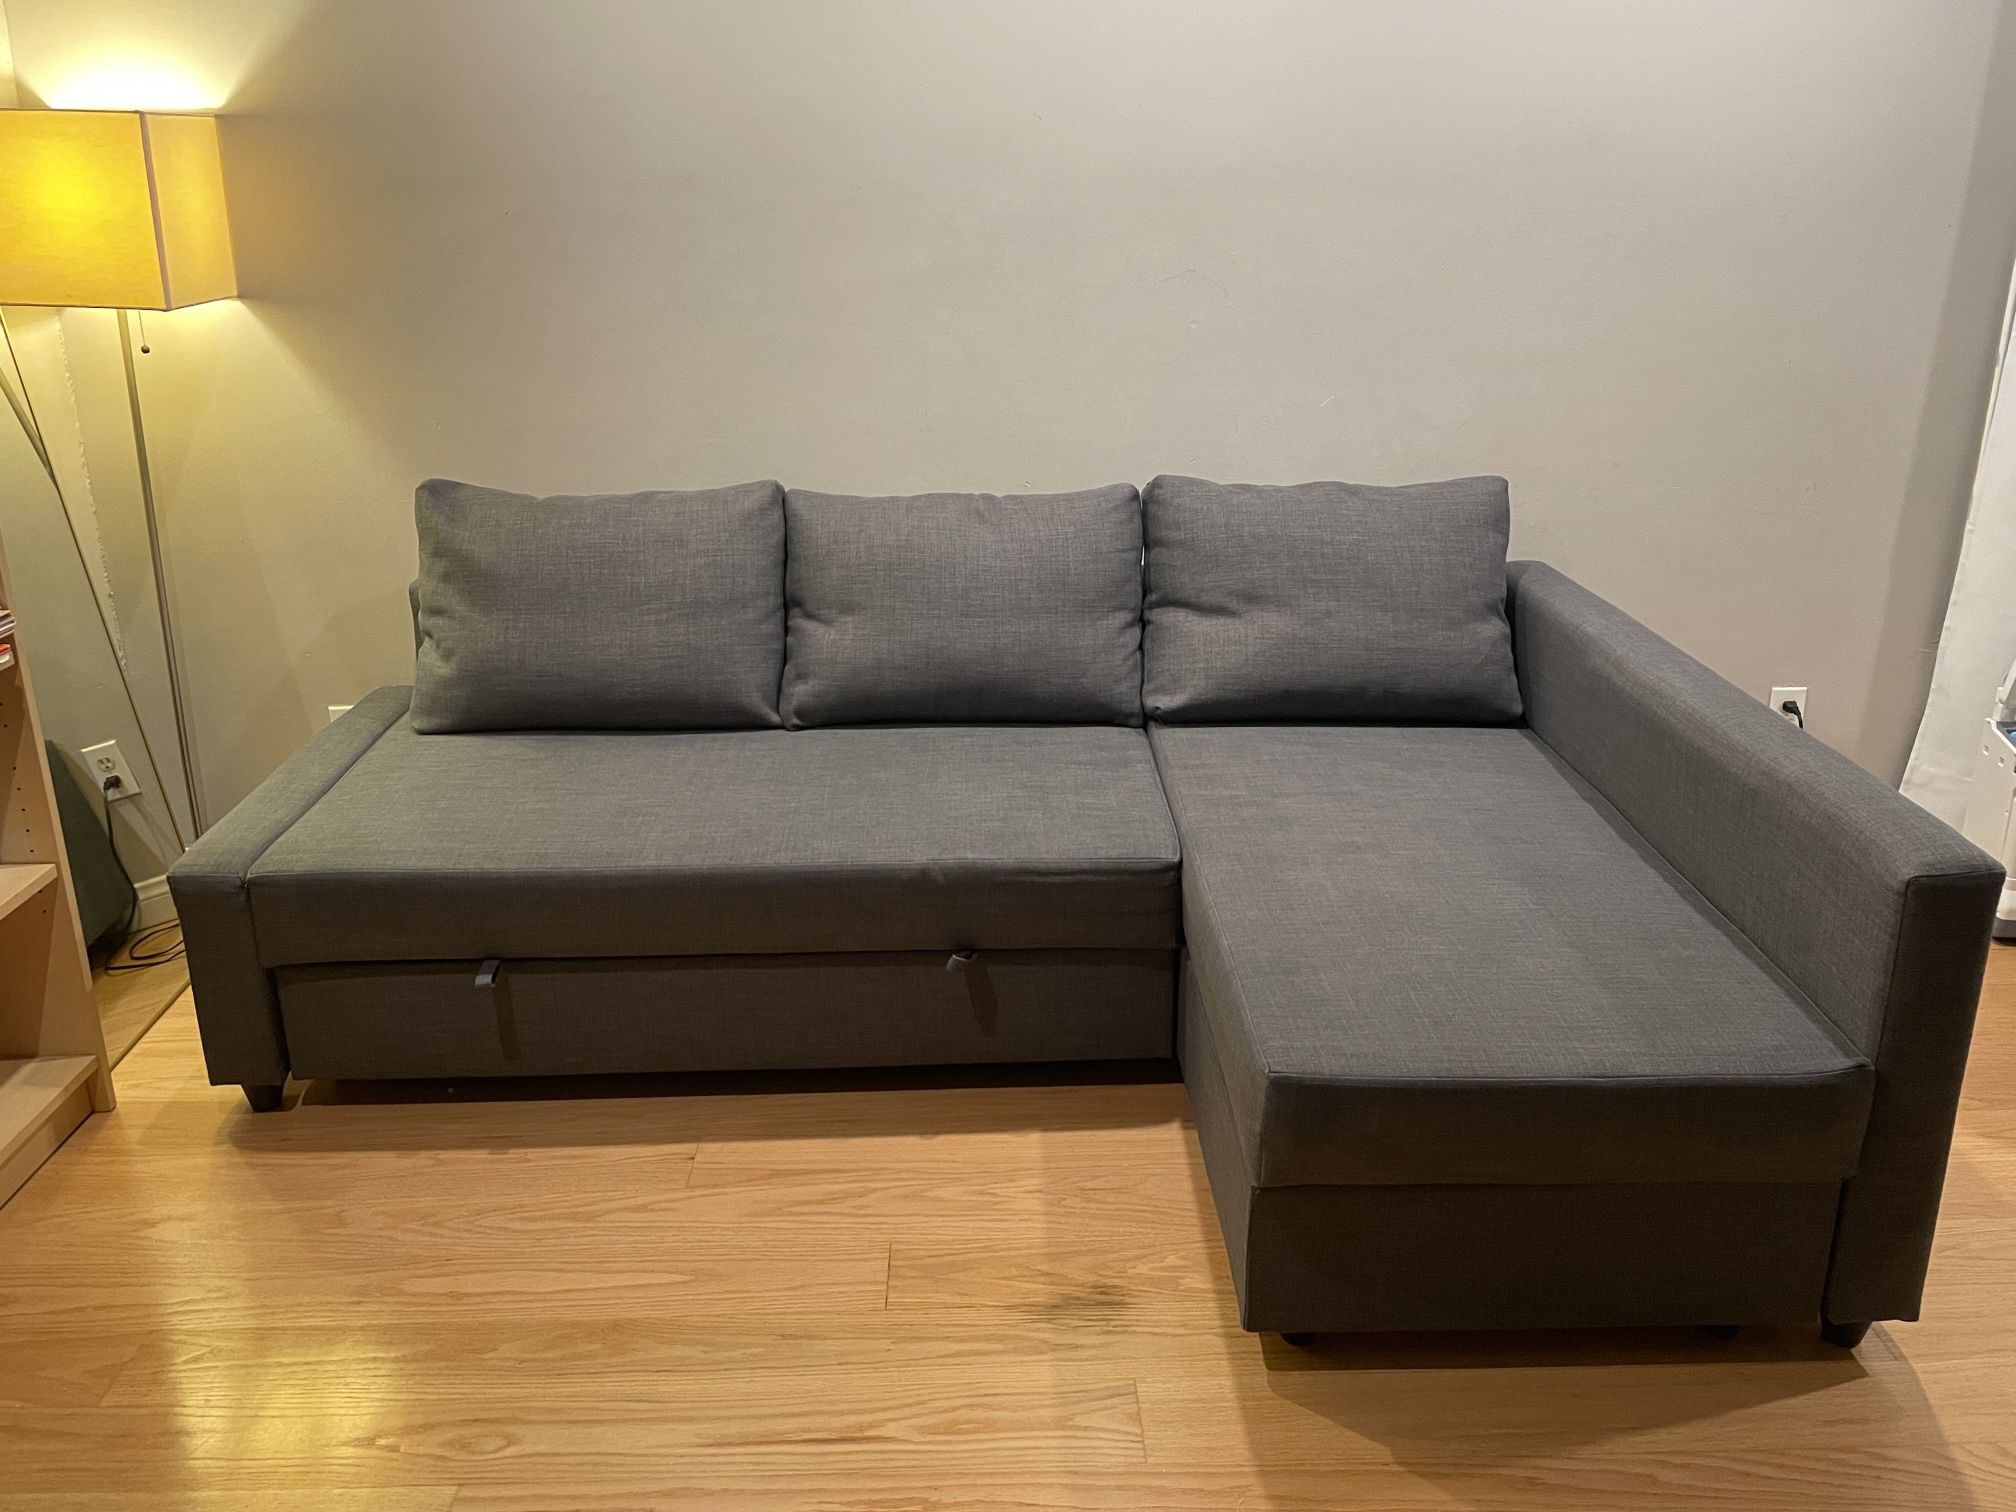 Ikea Sofa Bed FRIHETEN Sleeper sectional, 3 seat w/storage 